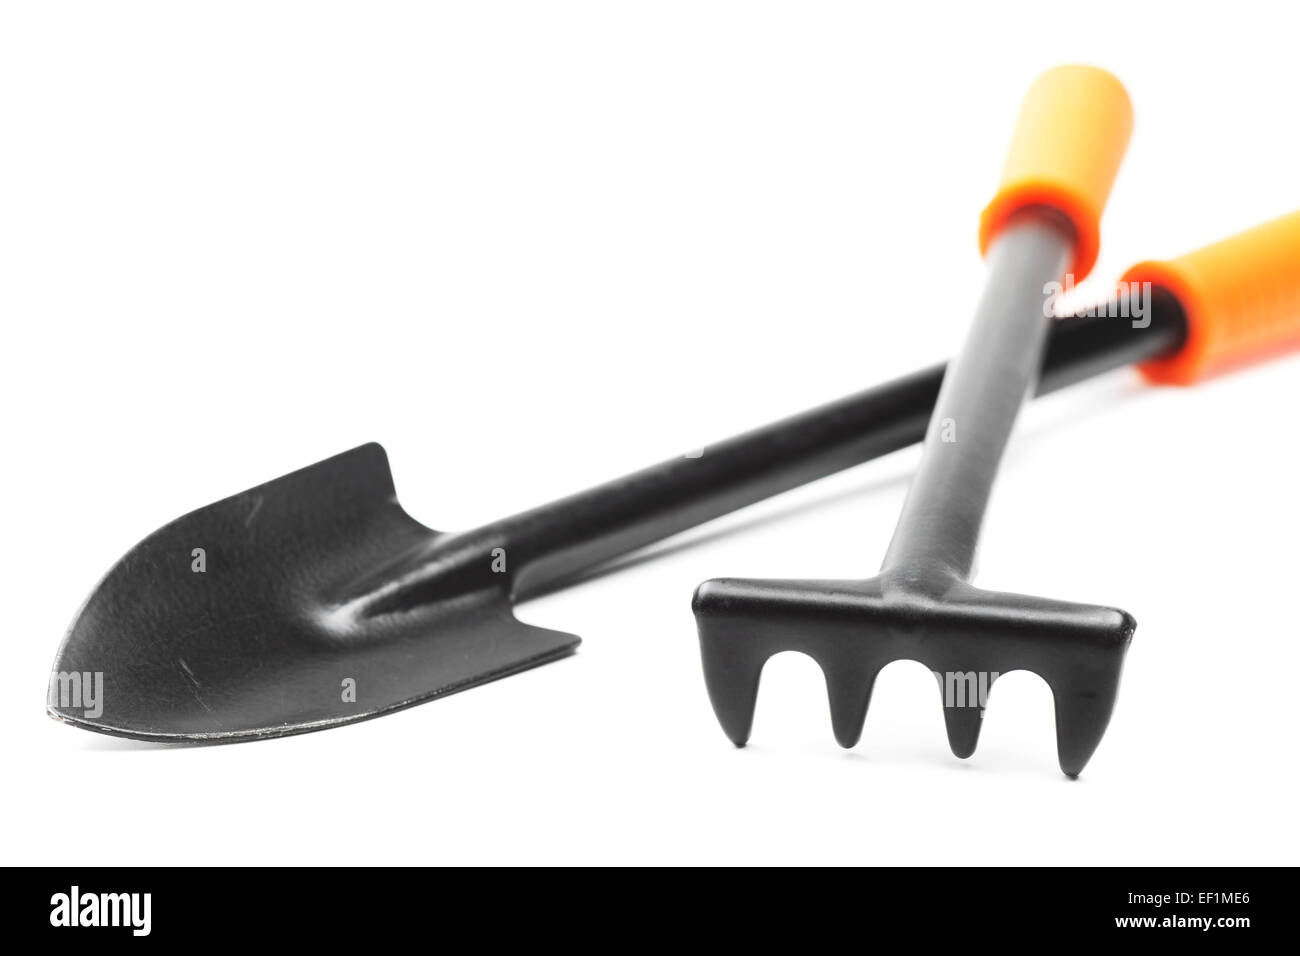 Pequeño jardín herramientas: una pala y un rastrillo sobre blanco Foto de stock